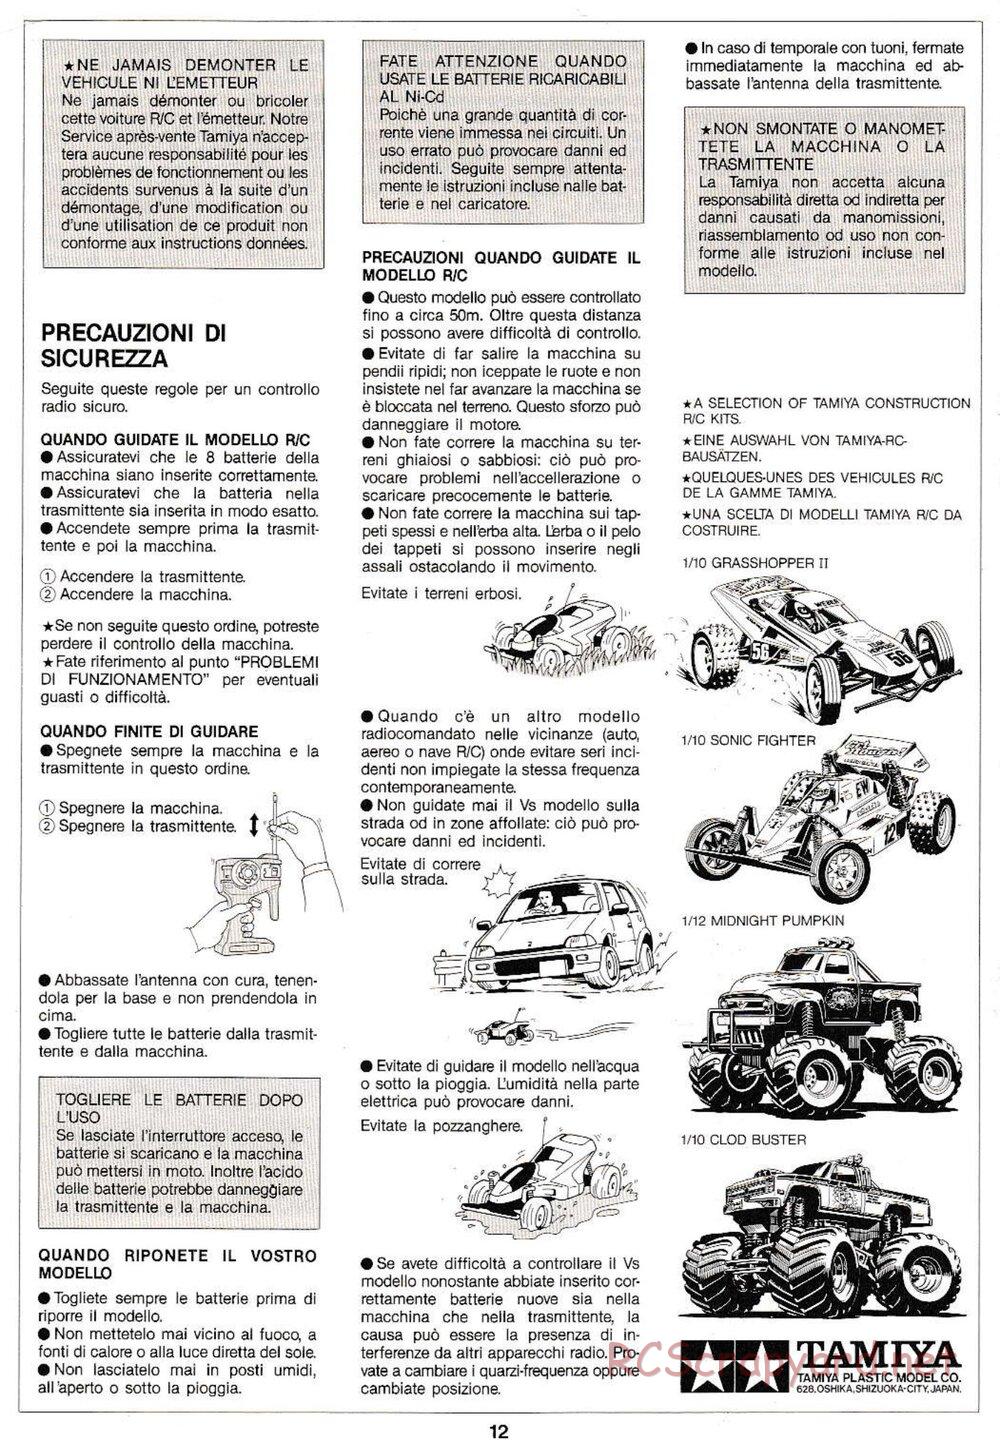 Tamiya - Thunder Shot QD Chassis - Manual - Page 12